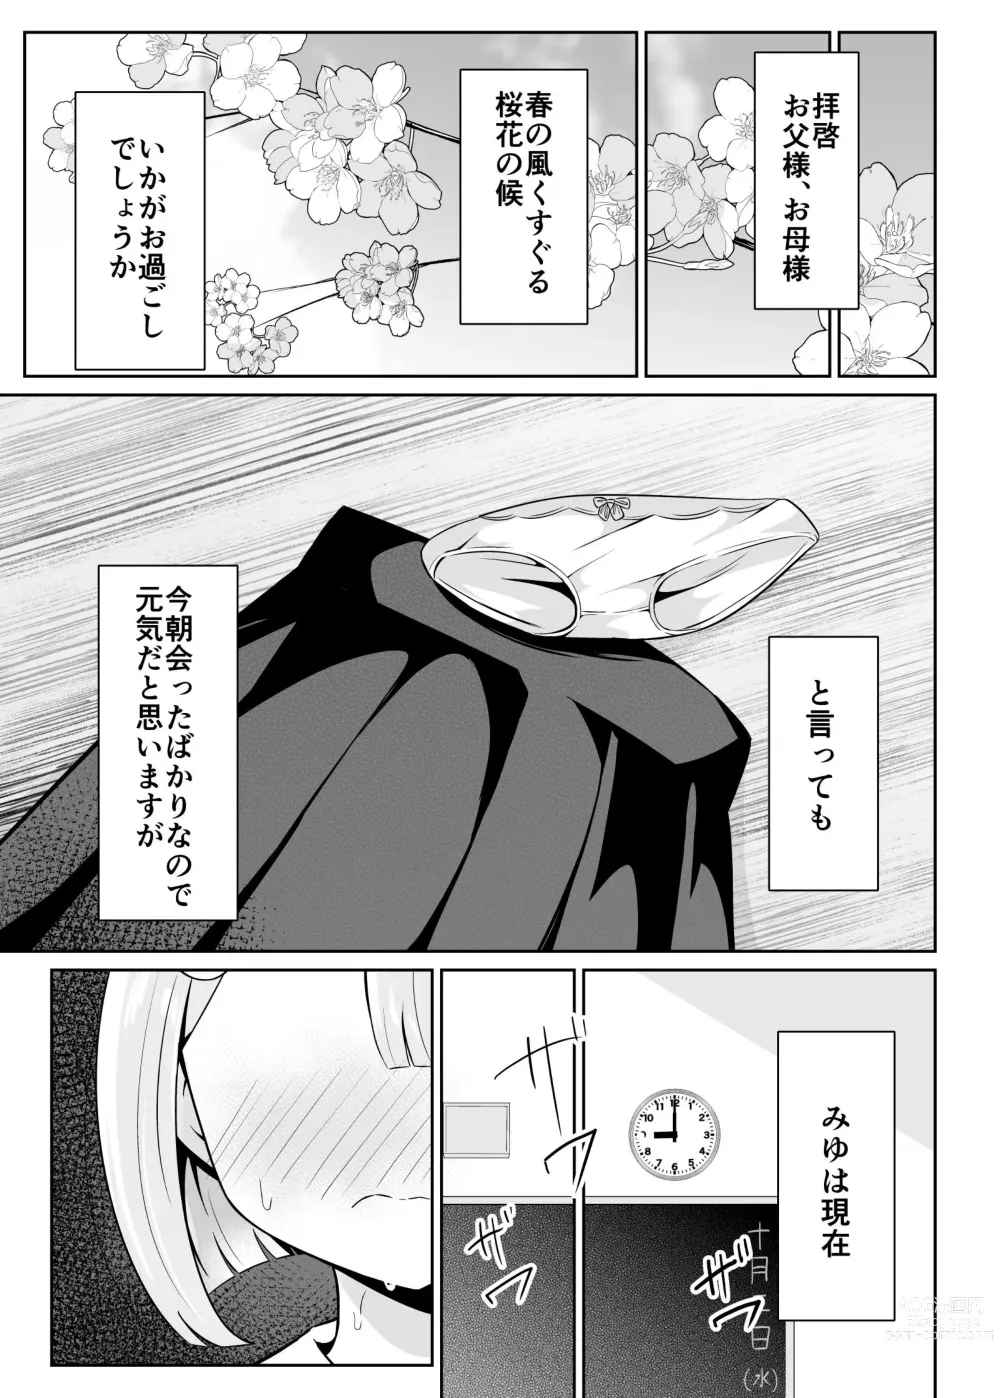 Page 6 of doujinshi Ojou-sama Gakkou  no Hoken no Jugyou wa Seneiteki desu